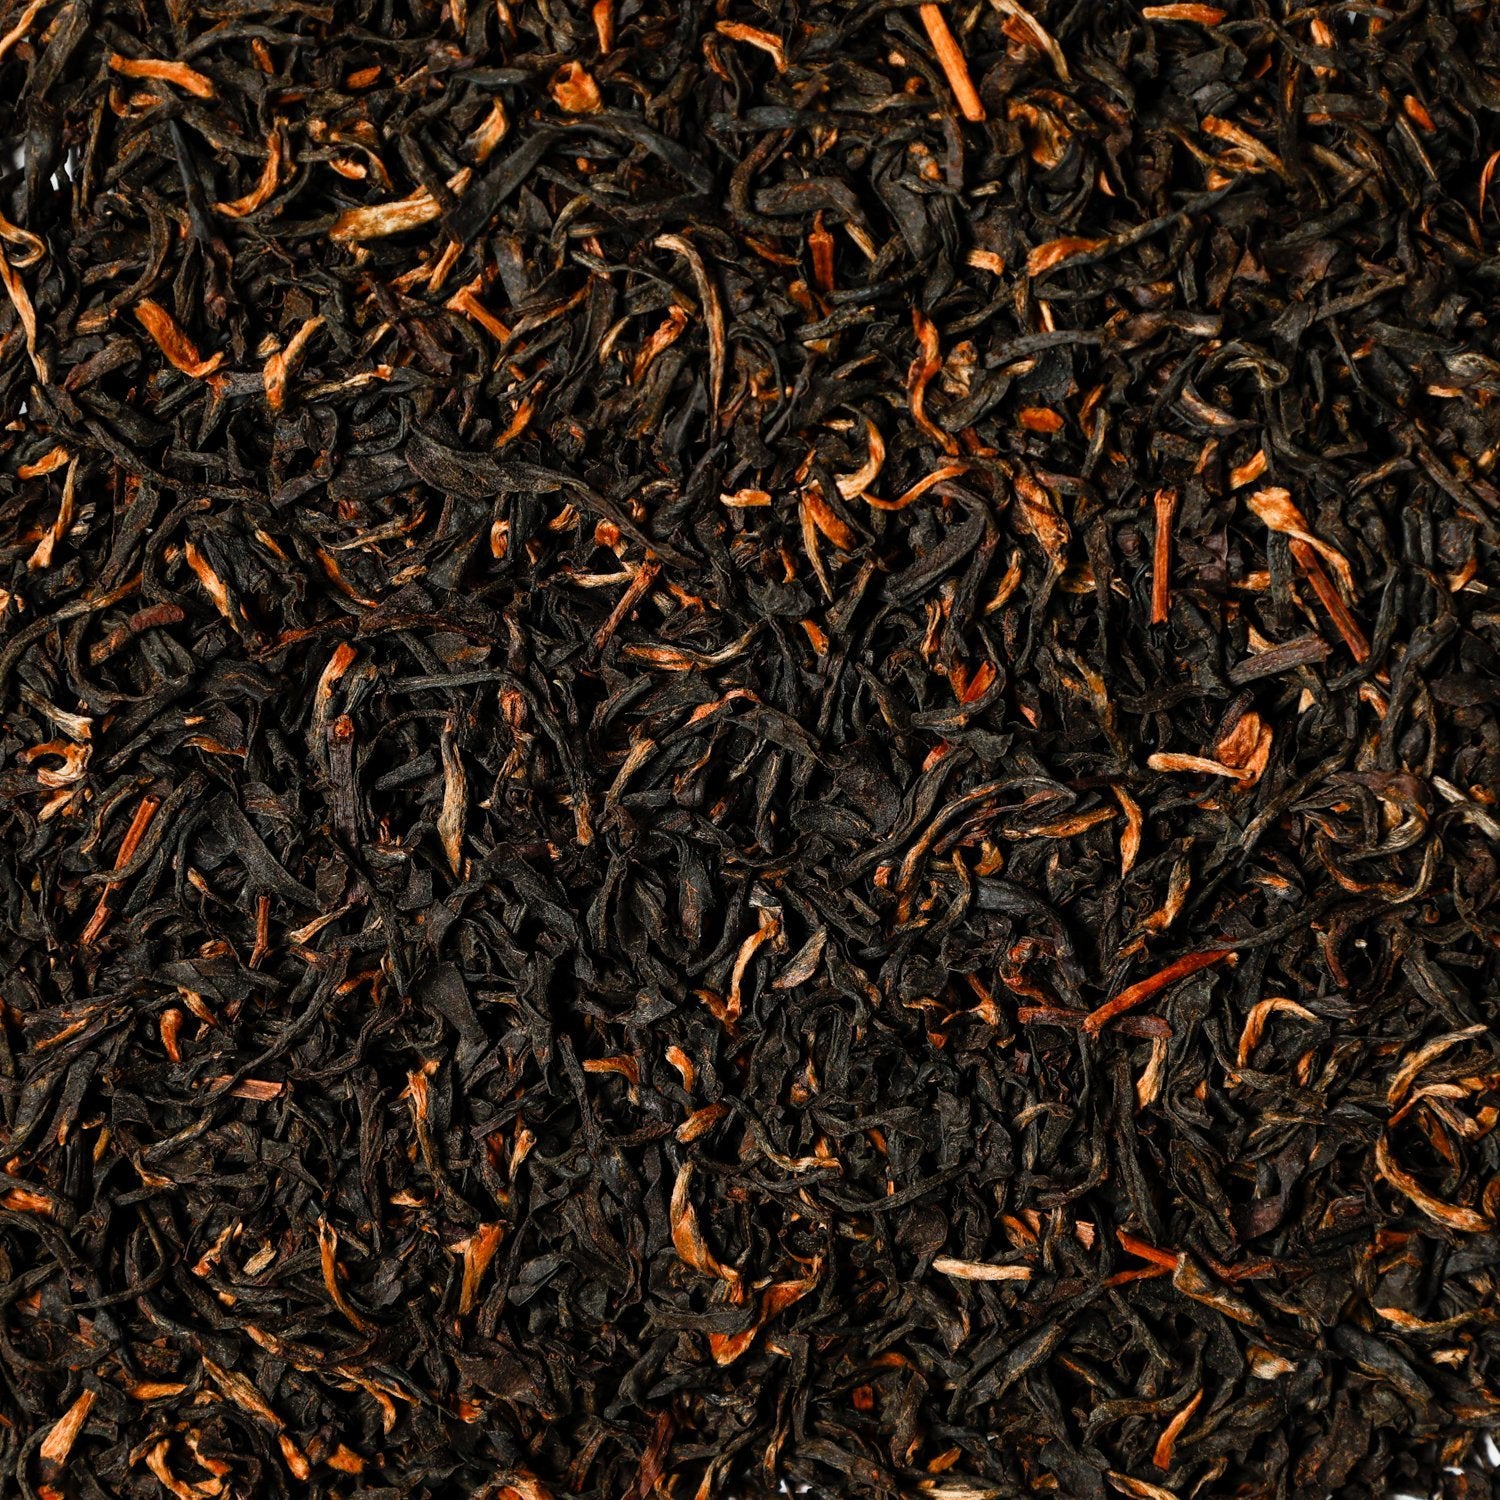 Assam Black Tea with Orange Pekoe